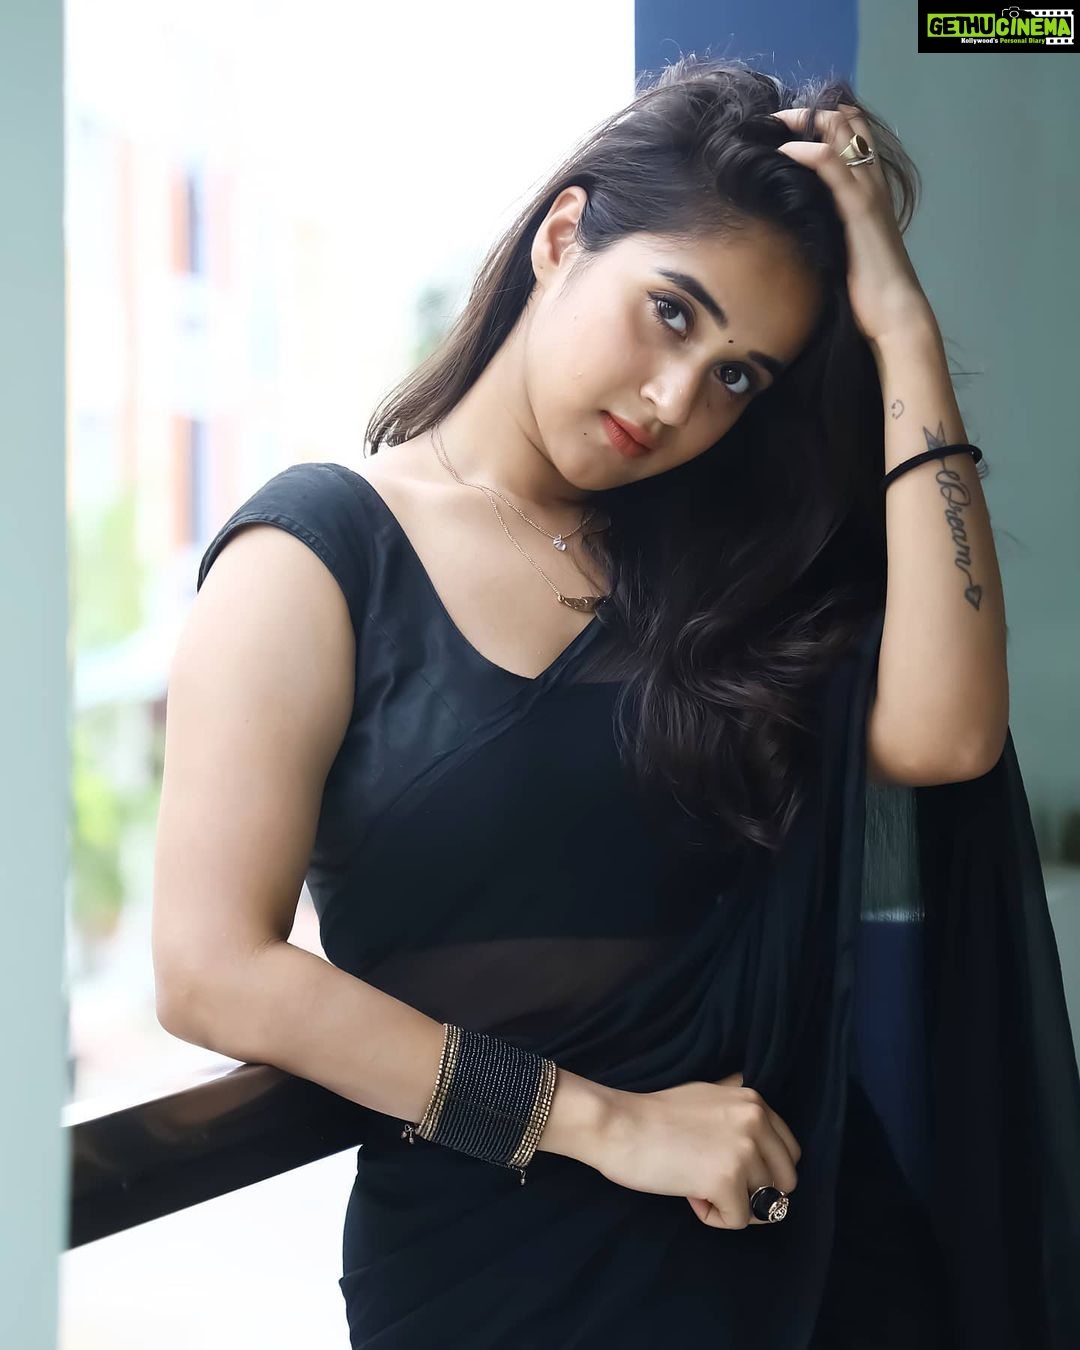 1080px x 1350px - Actress Deepthi Sunaina HD Photos and Wallpapers June 2020 - Gethu Cinema